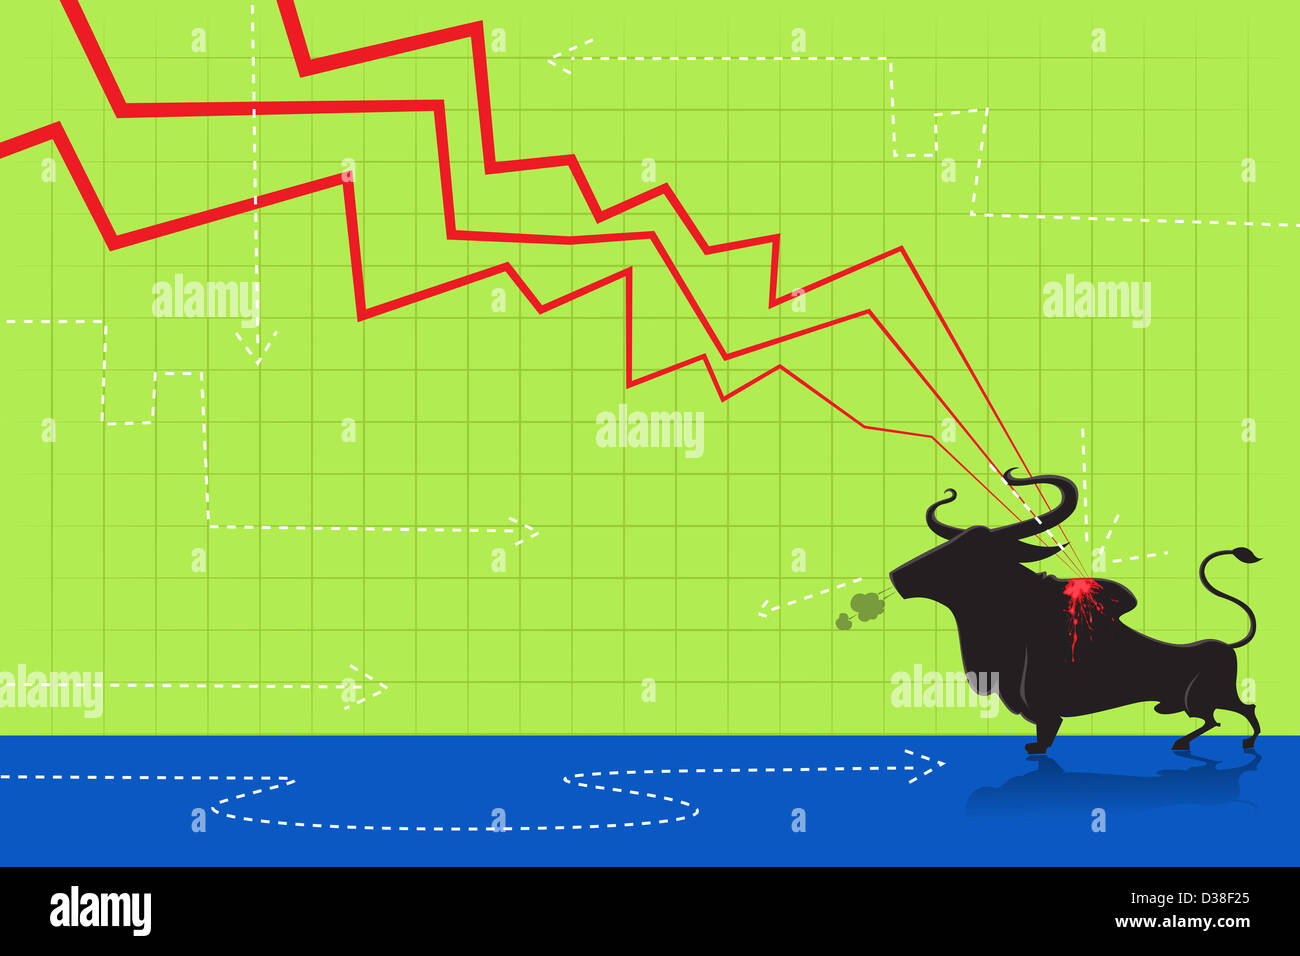 Image d'illustration graphique en ligne descendante de bull attaque représentant perte de marché haussier Banque D'Images